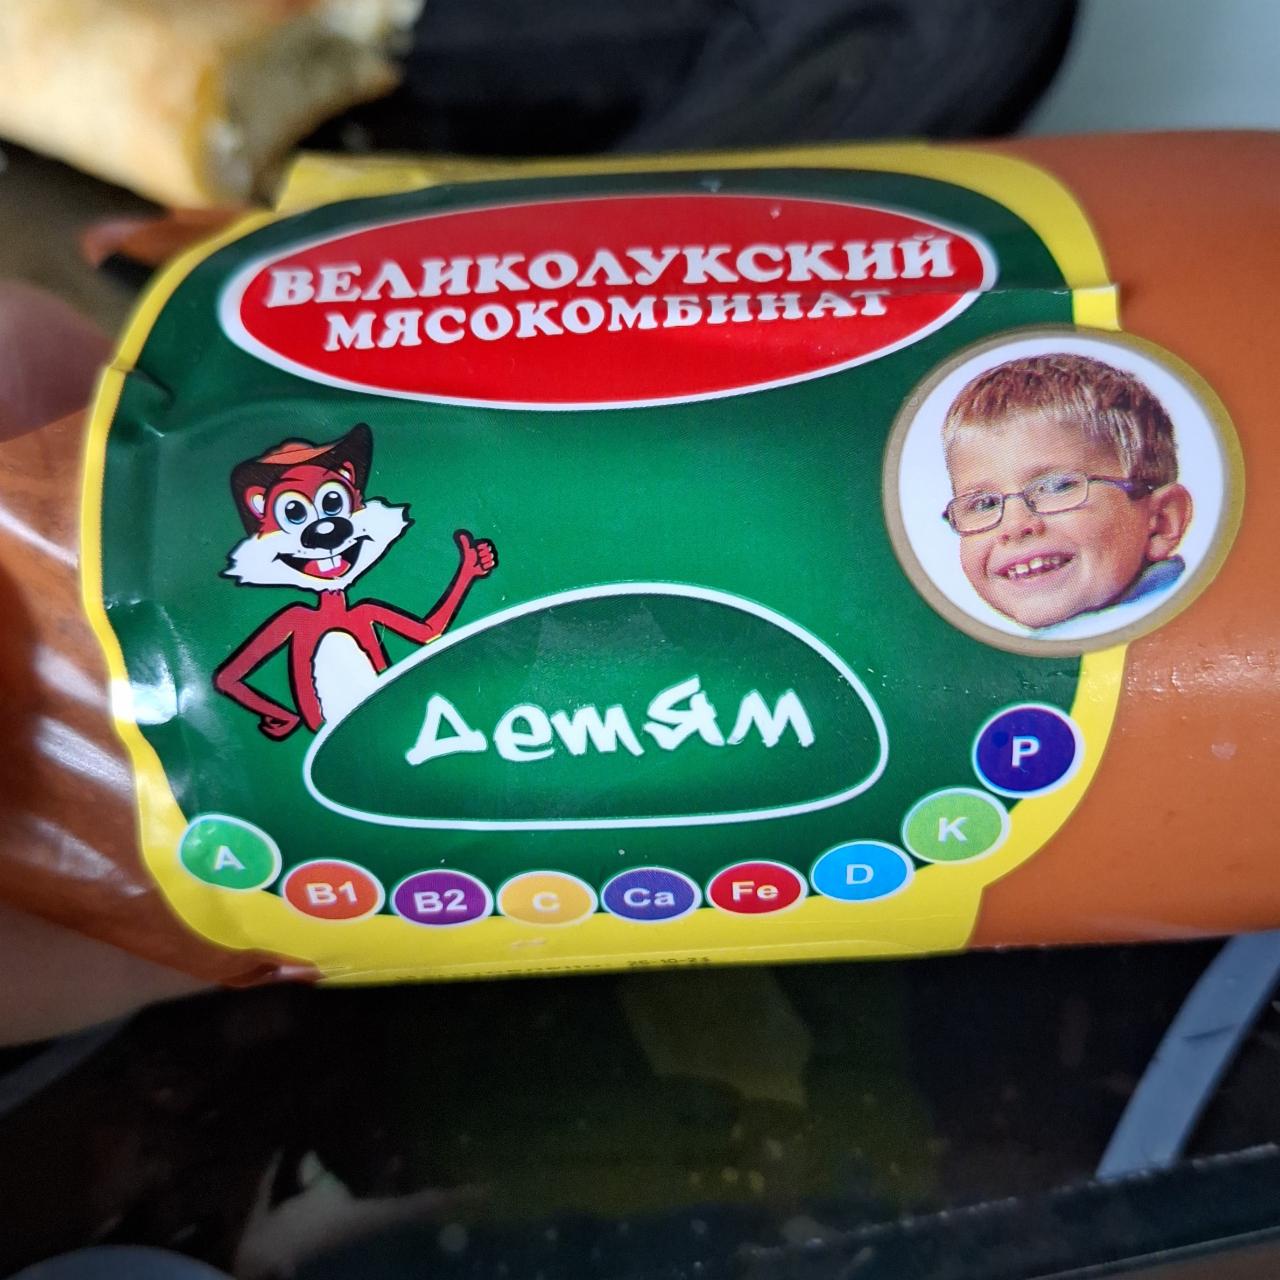 Фото - колбаса вареная, детям великолукский мясокомбинат